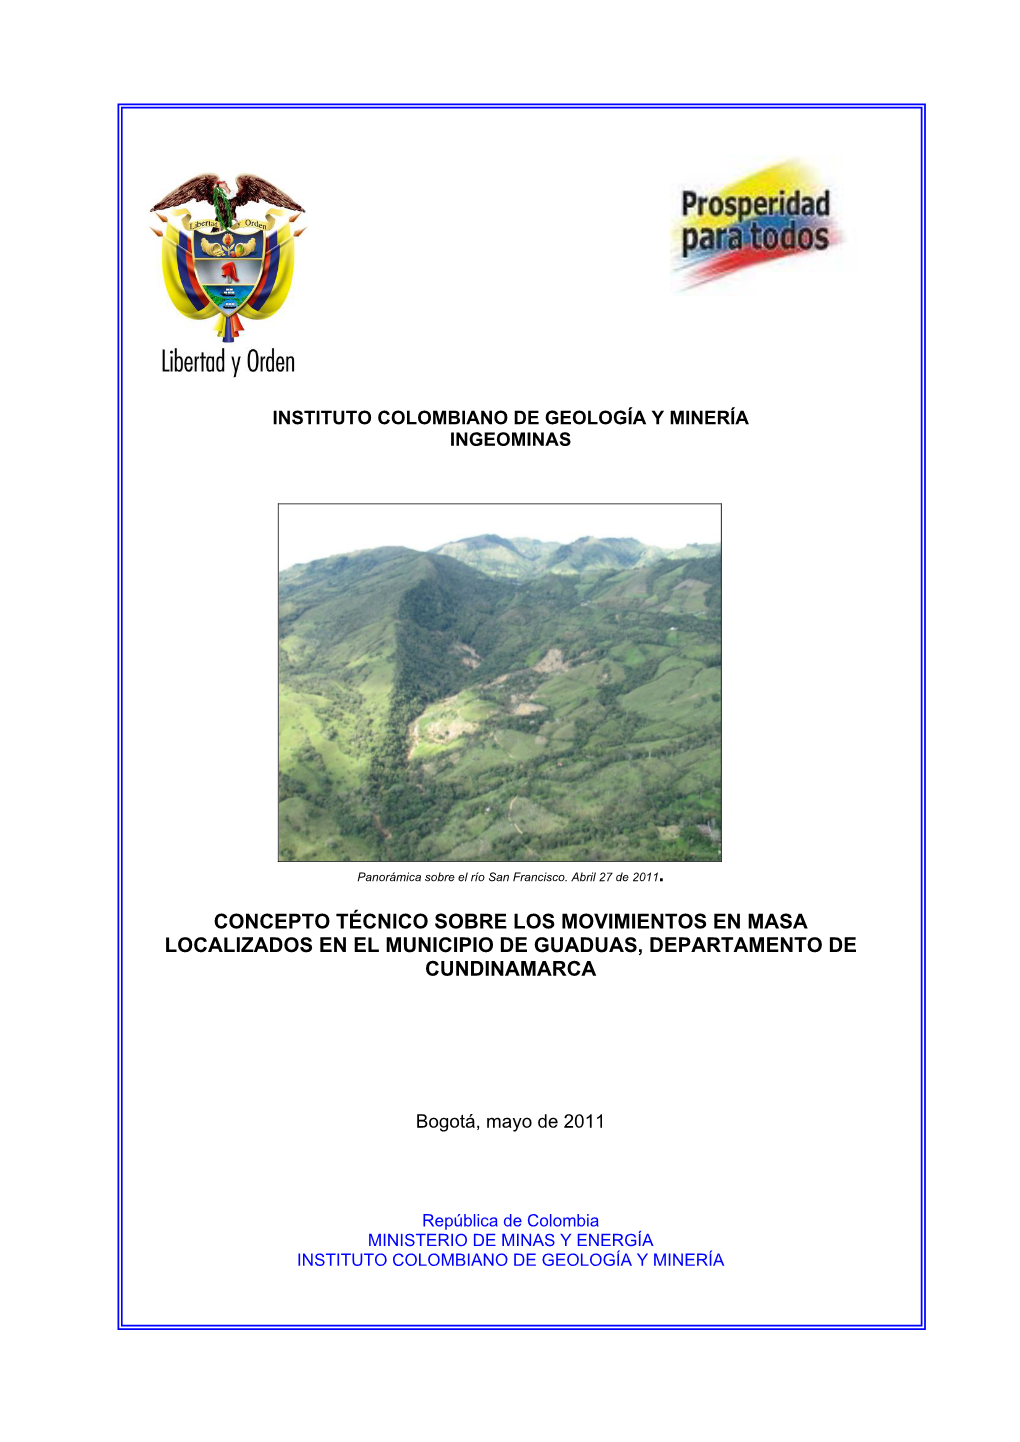 Concepto Técnico Sobre Los Movimientos En Masa Localizados En El Municipio De Guaduas, Departamento De Cundinamarca